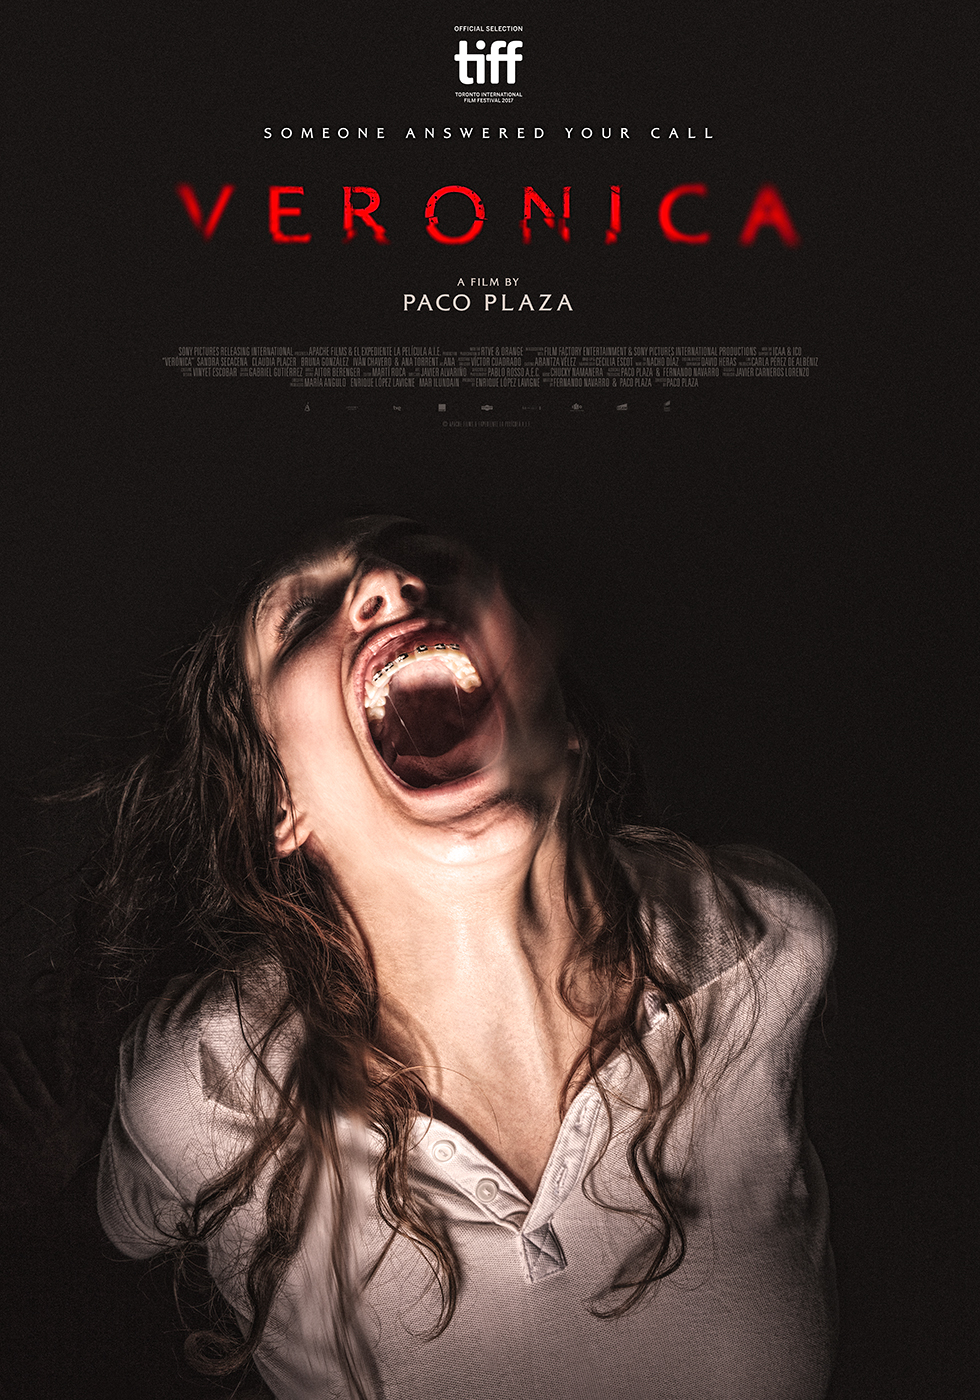 Nonton film Veronica layarkaca21 indoxx1 ganool online streaming terbaru